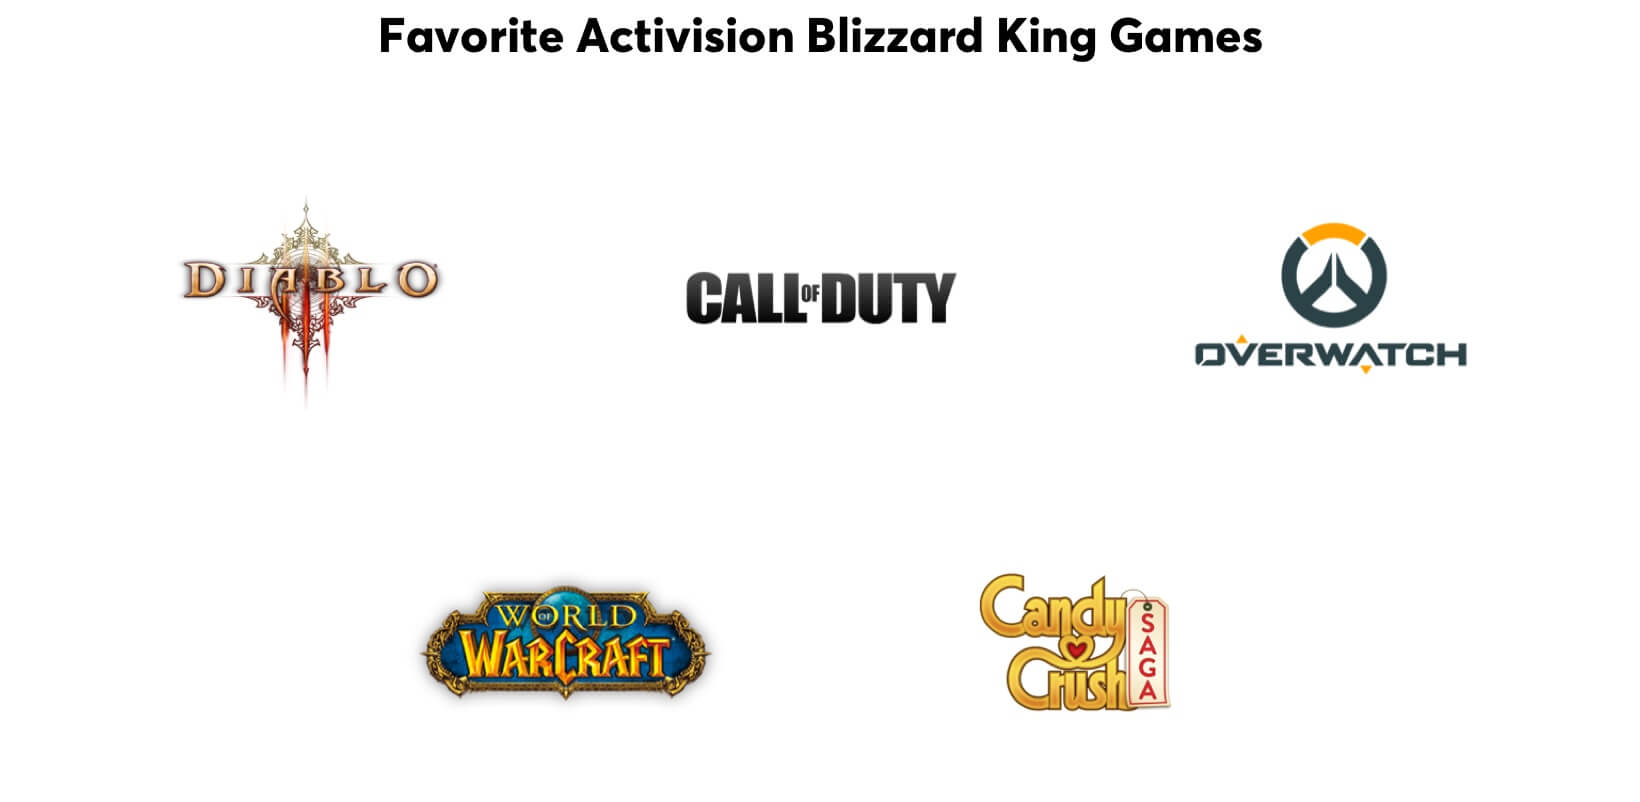 Juegos favoritos de los conquistadores: Diablo, Call of Duty, Overwatch, World of WarCraft, Candy Crush